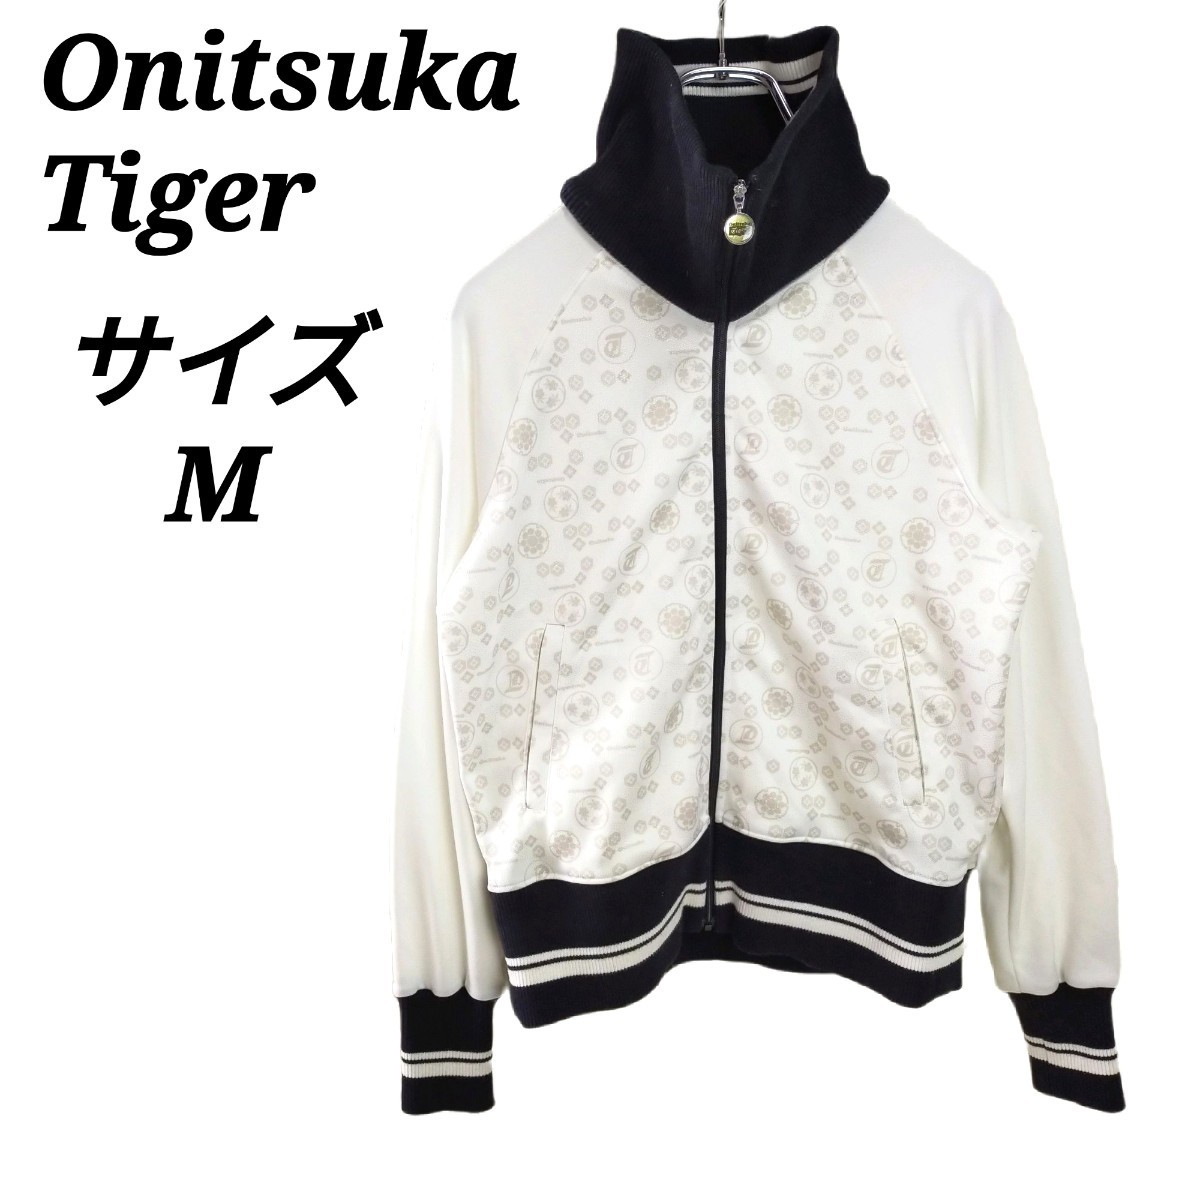 オニツカタイガー Onitsuka Tiger【M】トラックジャケット ジャージ トップス ジップアップ アシックス レディース